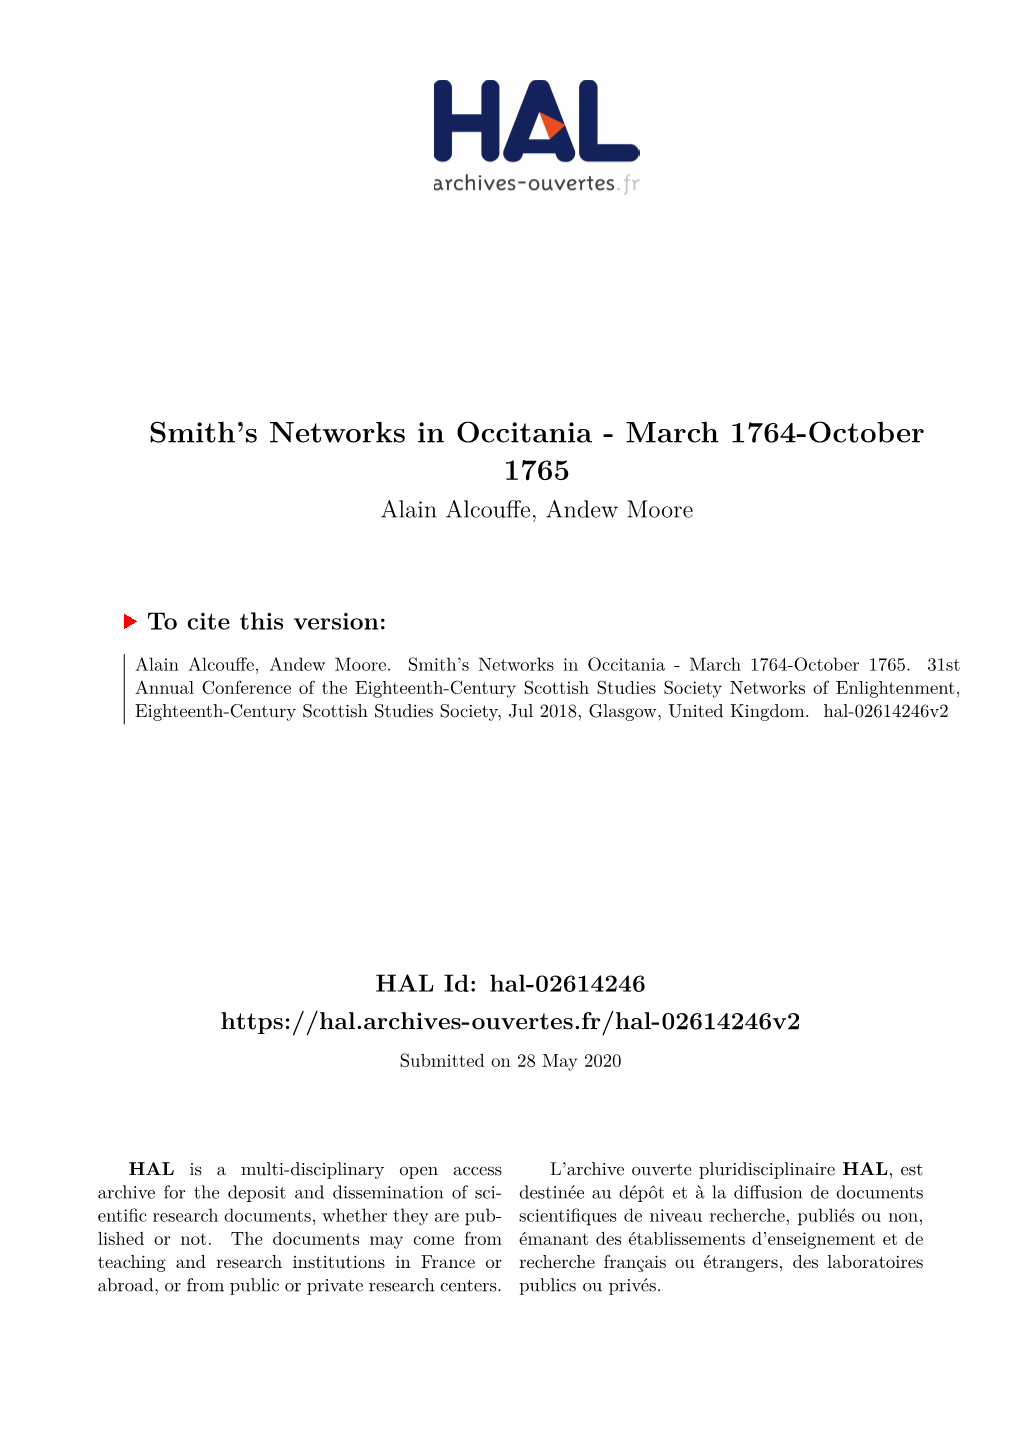 Smith's Networks in Occitania